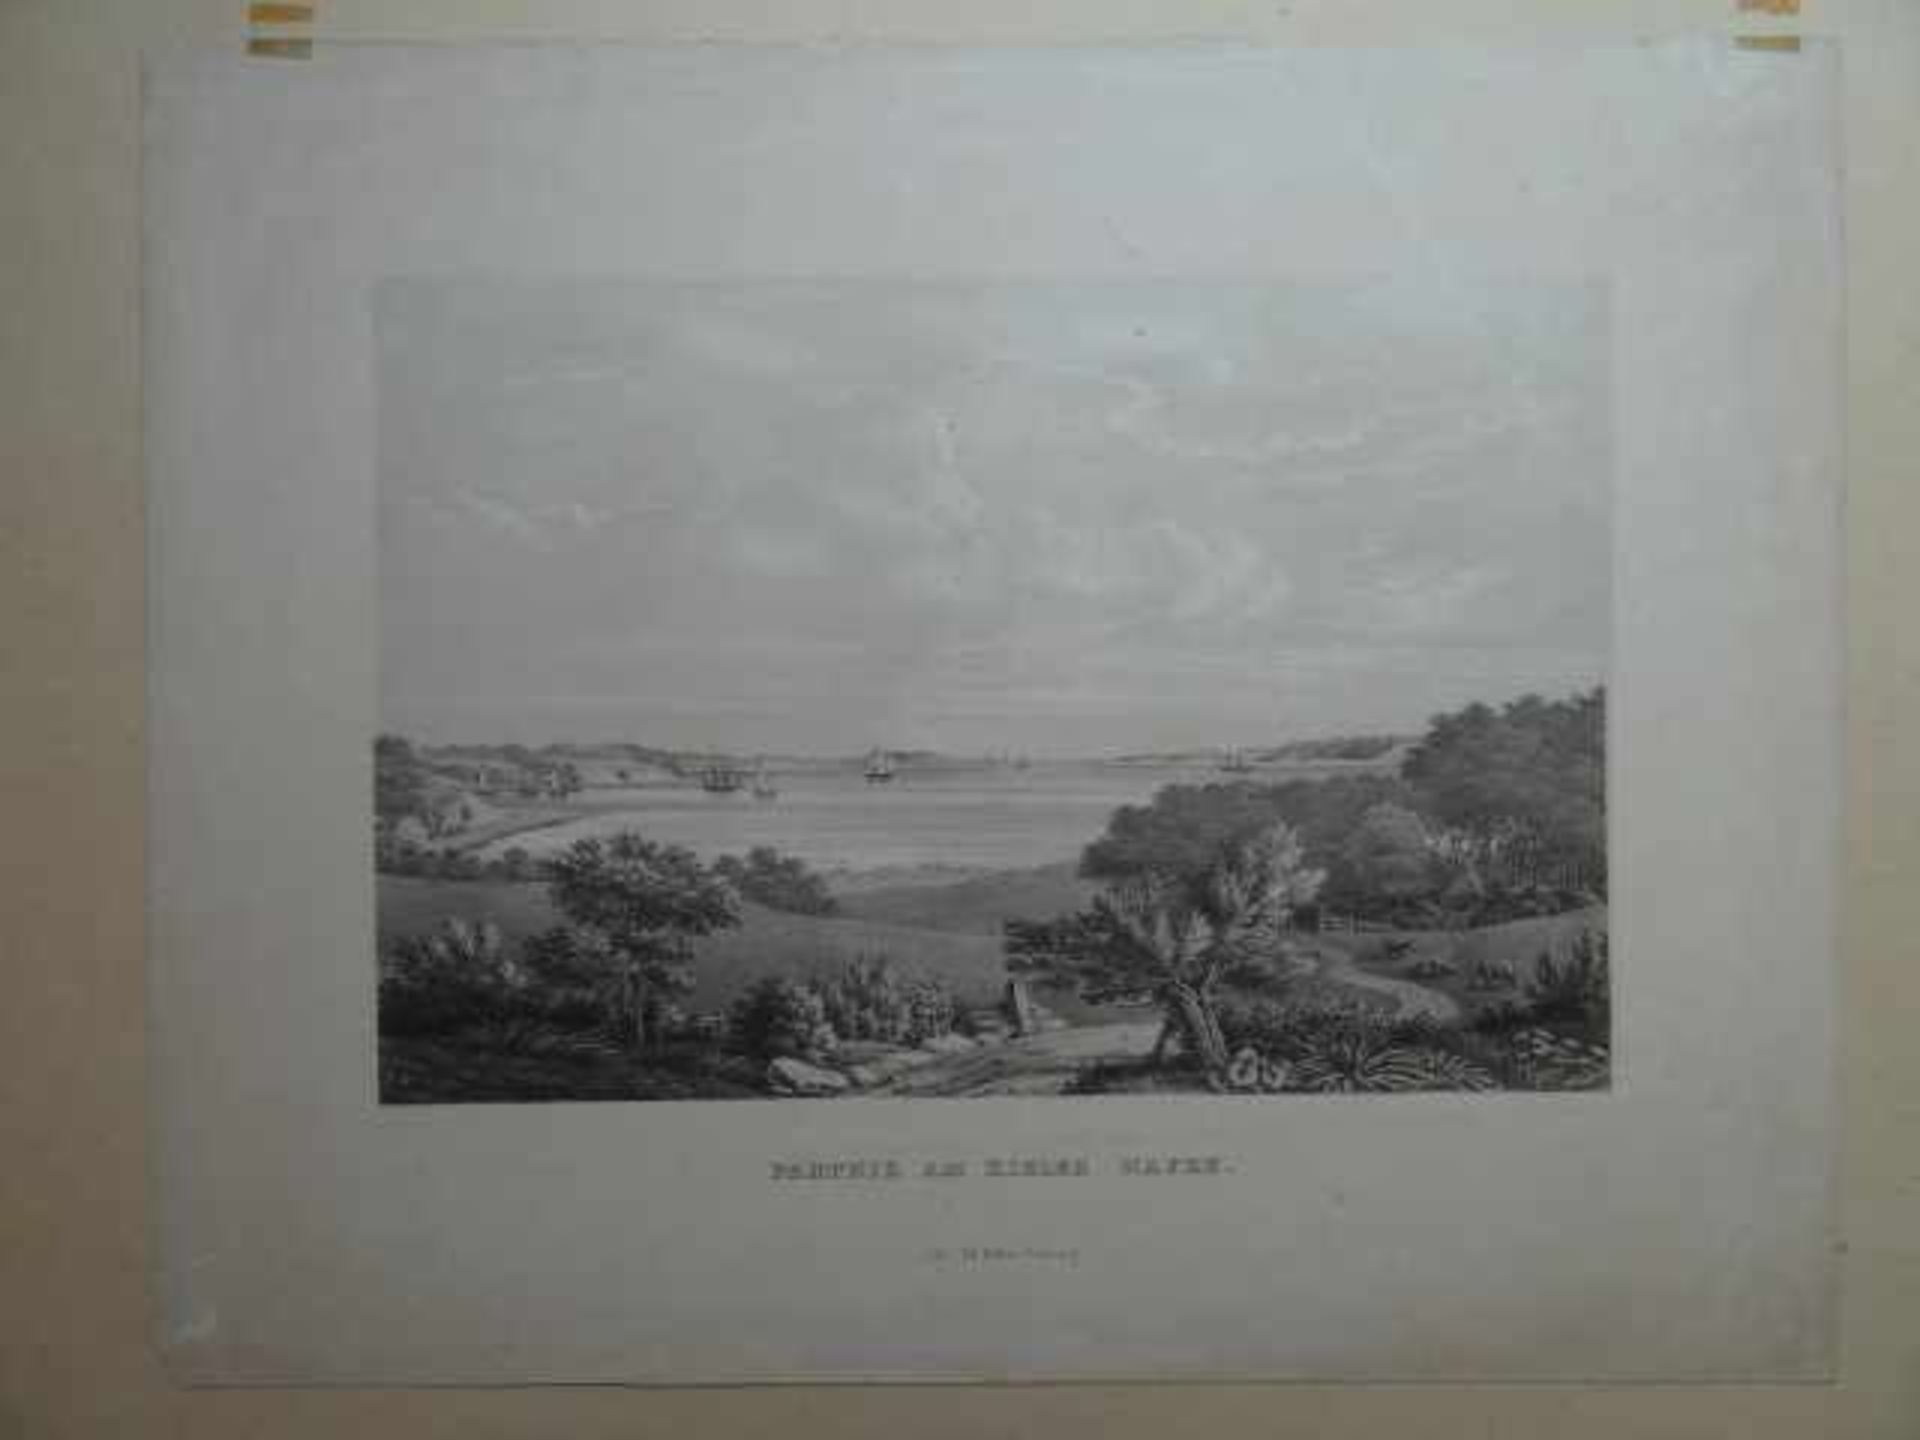 Kiel.- Parthie am Kieler Hafen. Lithographie von Ed. Ritter nach R.R. Hamburg, um 1840. 28 x 42 - Bild 2 aus 5